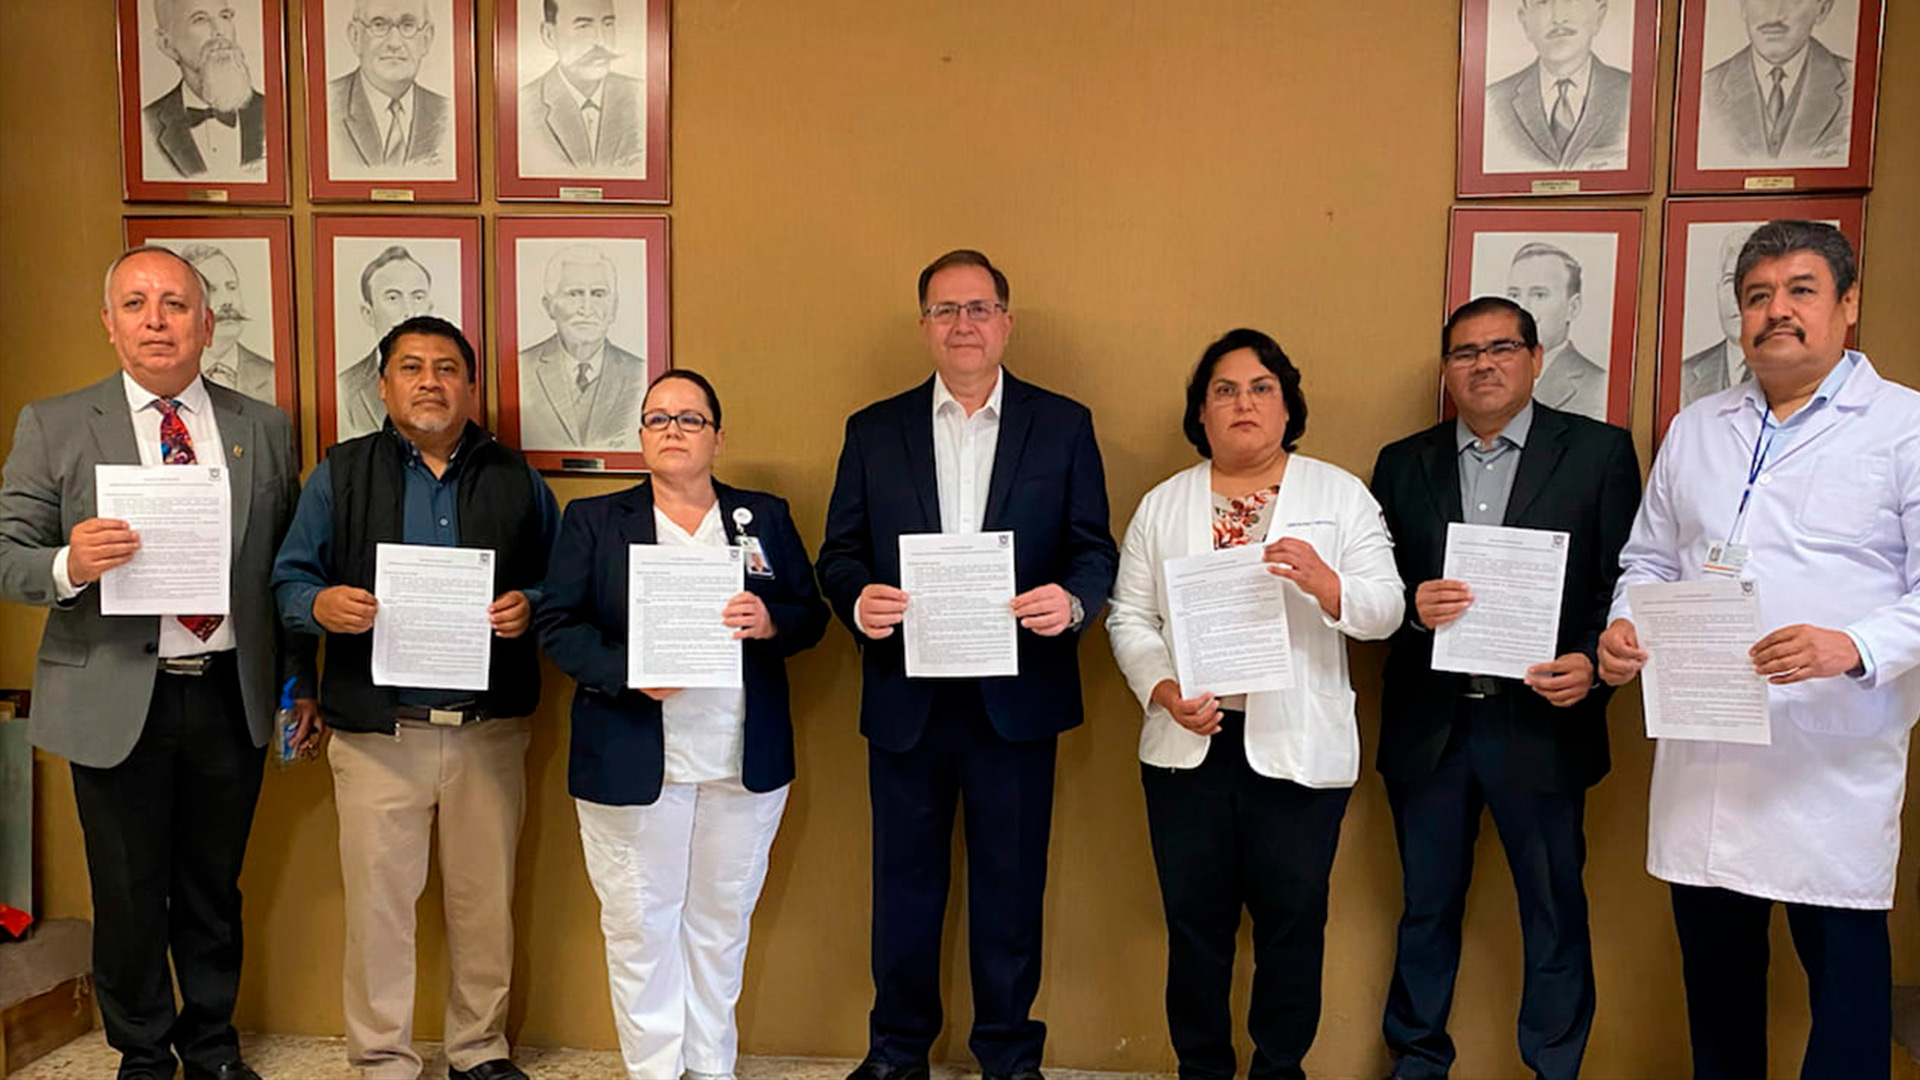 Coronavirus: Municipio de Montemorelos invita a tomar precauciones y no alarmarse